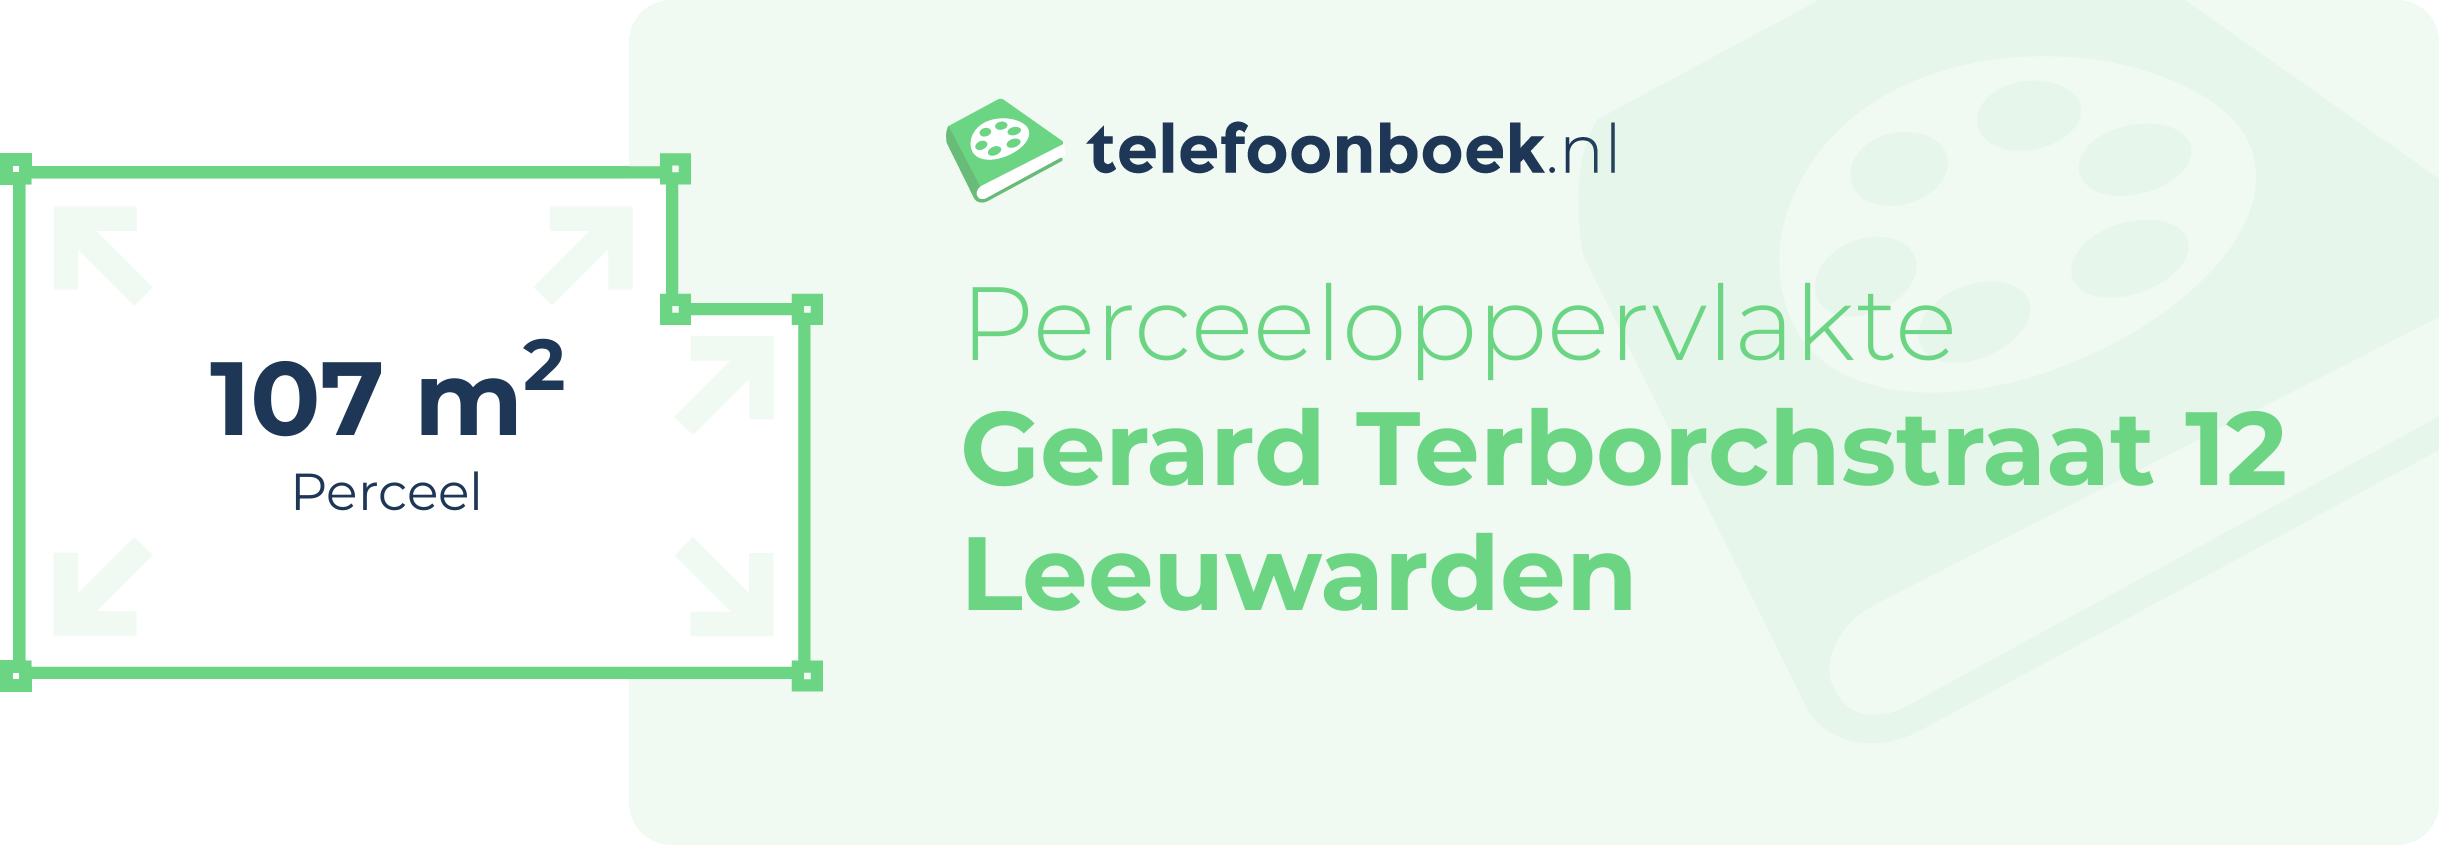 Perceeloppervlakte Gerard Terborchstraat 12 Leeuwarden